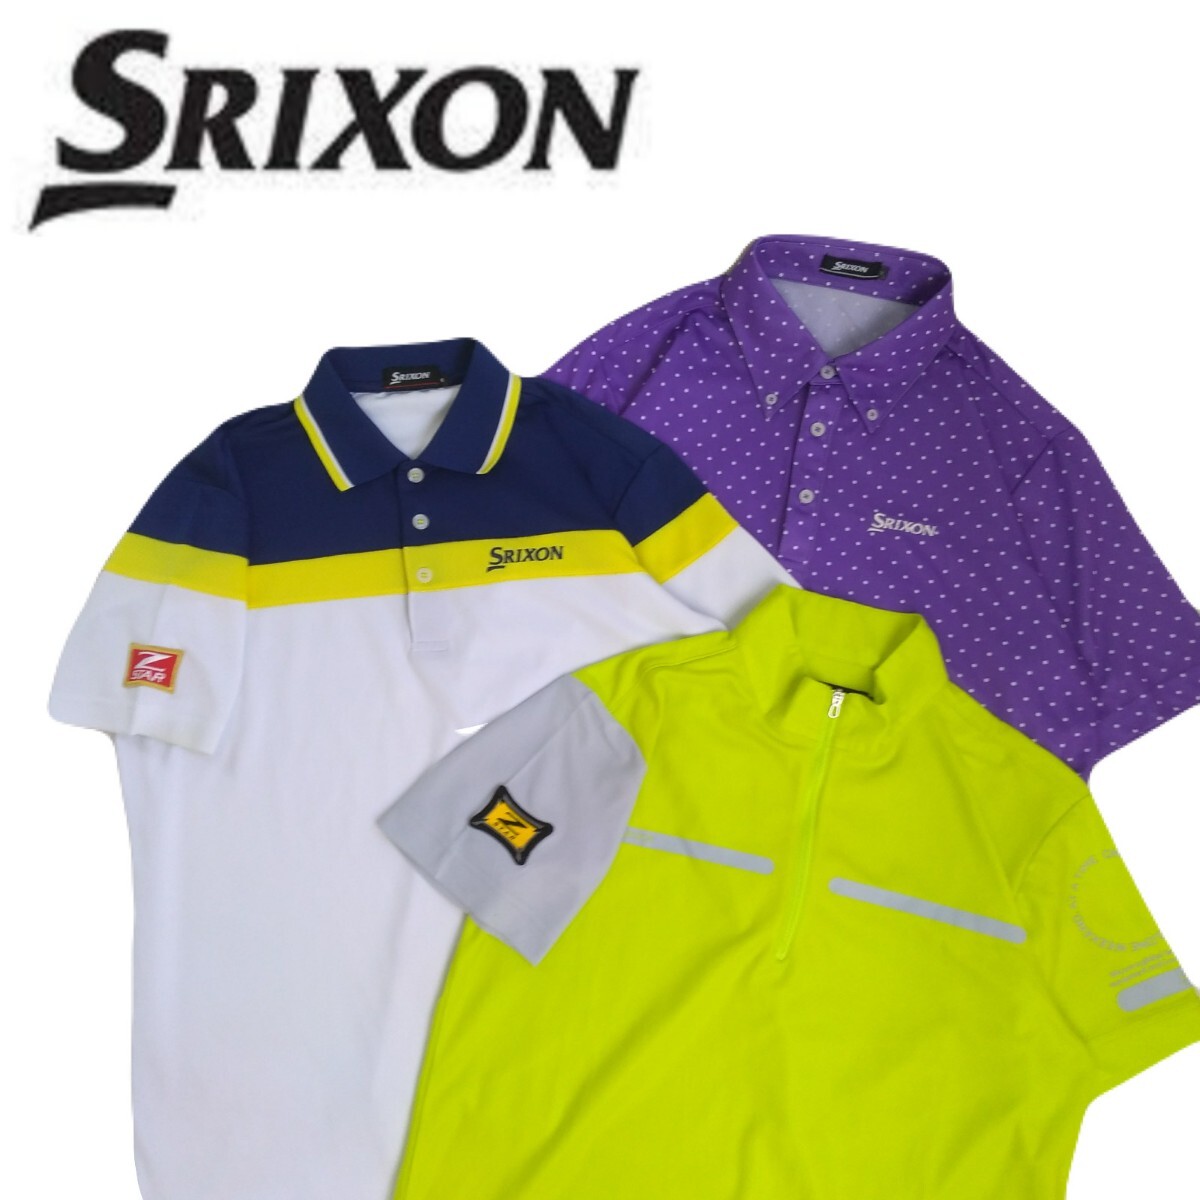  превосходный товар профессиональный роскошный вышивка 3 пункт SRIXON Z-STAR. вода скорость . стрейч точка общий рисунок рубашка-поло с коротким рукавом мужской M Srixon Golf одежда 240596